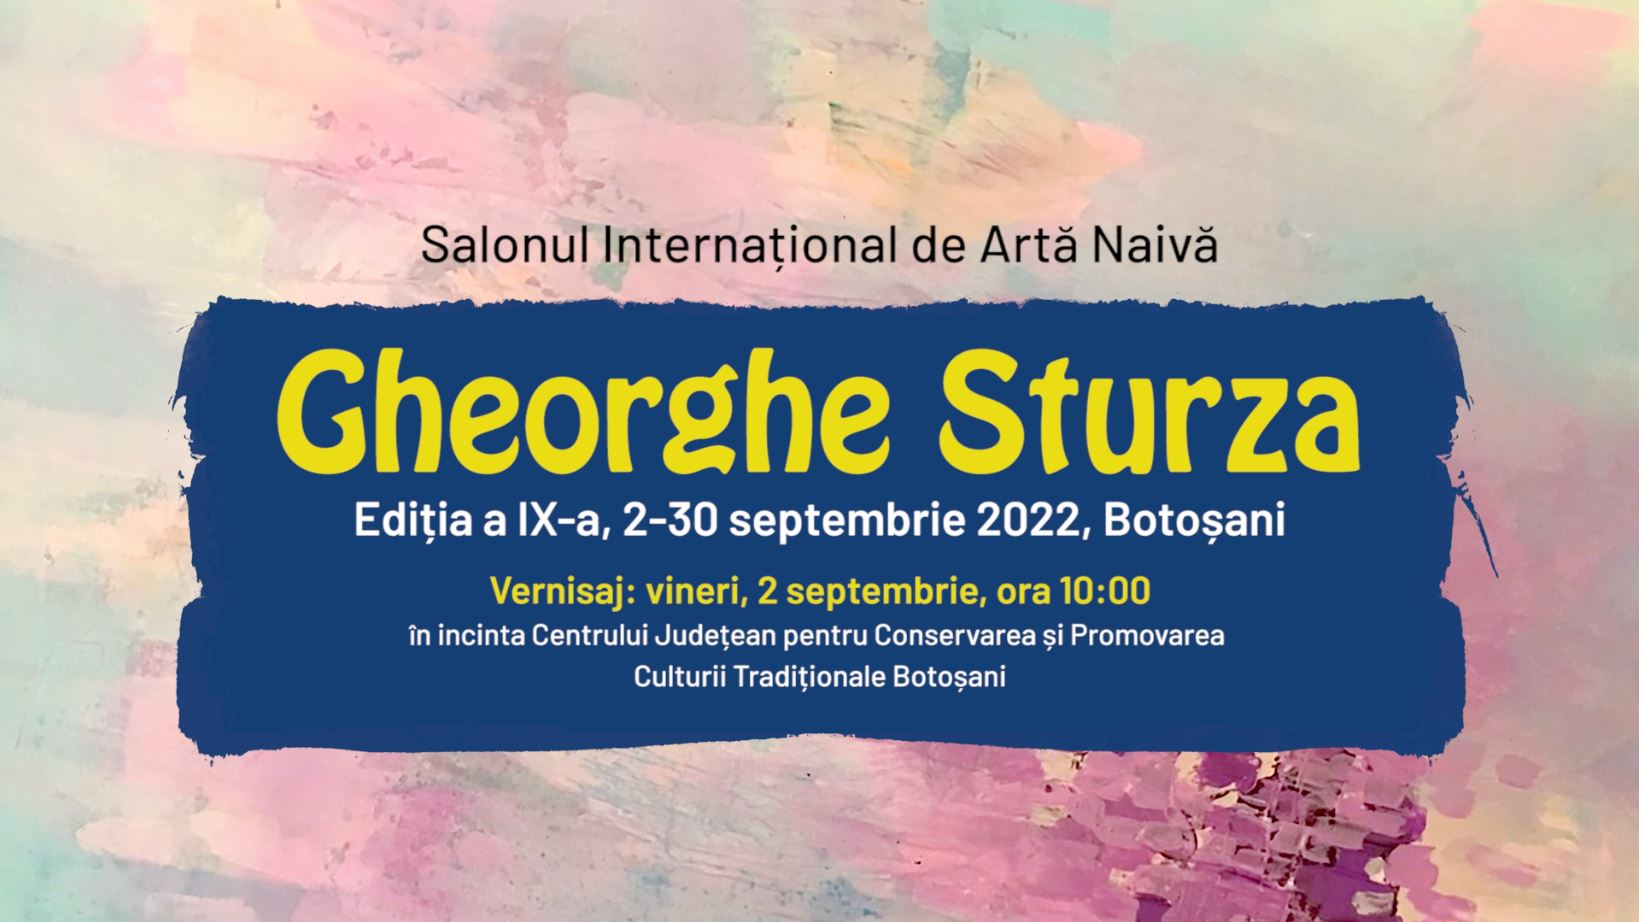 Comunicat de presă – Salonul Internațional de Artă Naivă „Gheorghe Sturza”, 2-30 septembrie 2022